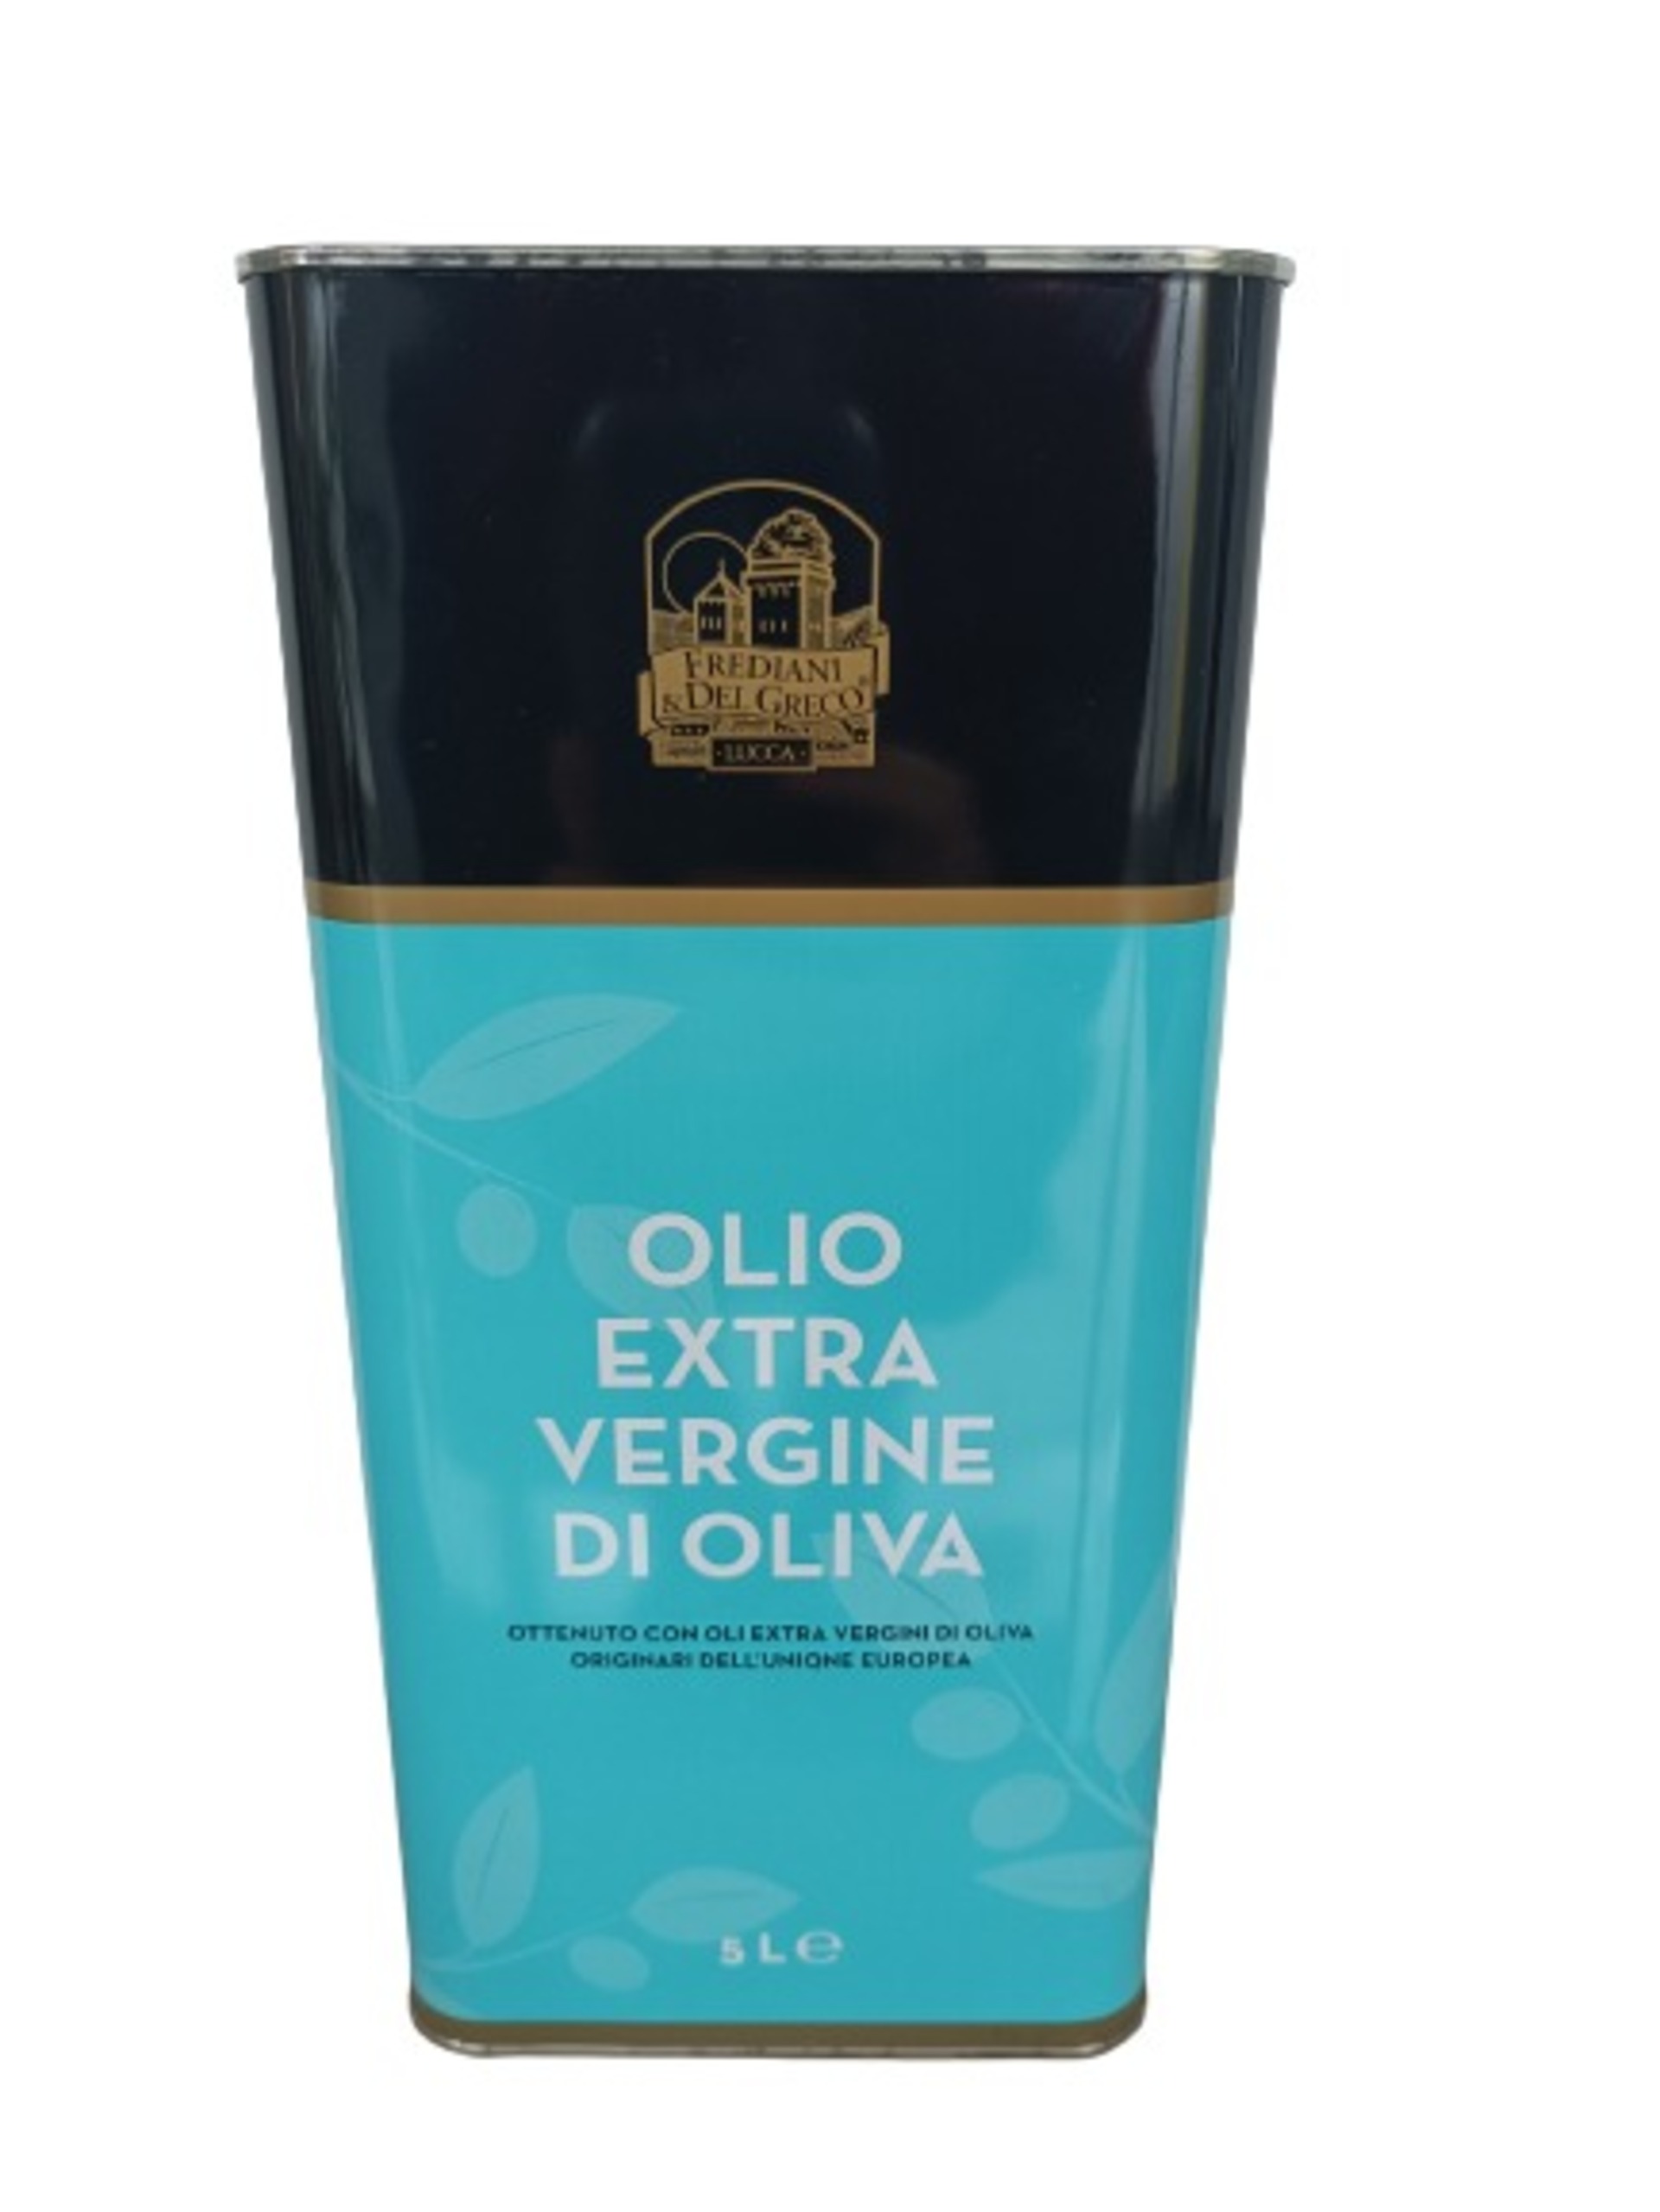 Frediani & Del Greco Extra Virgin Olive Oil 5l EU